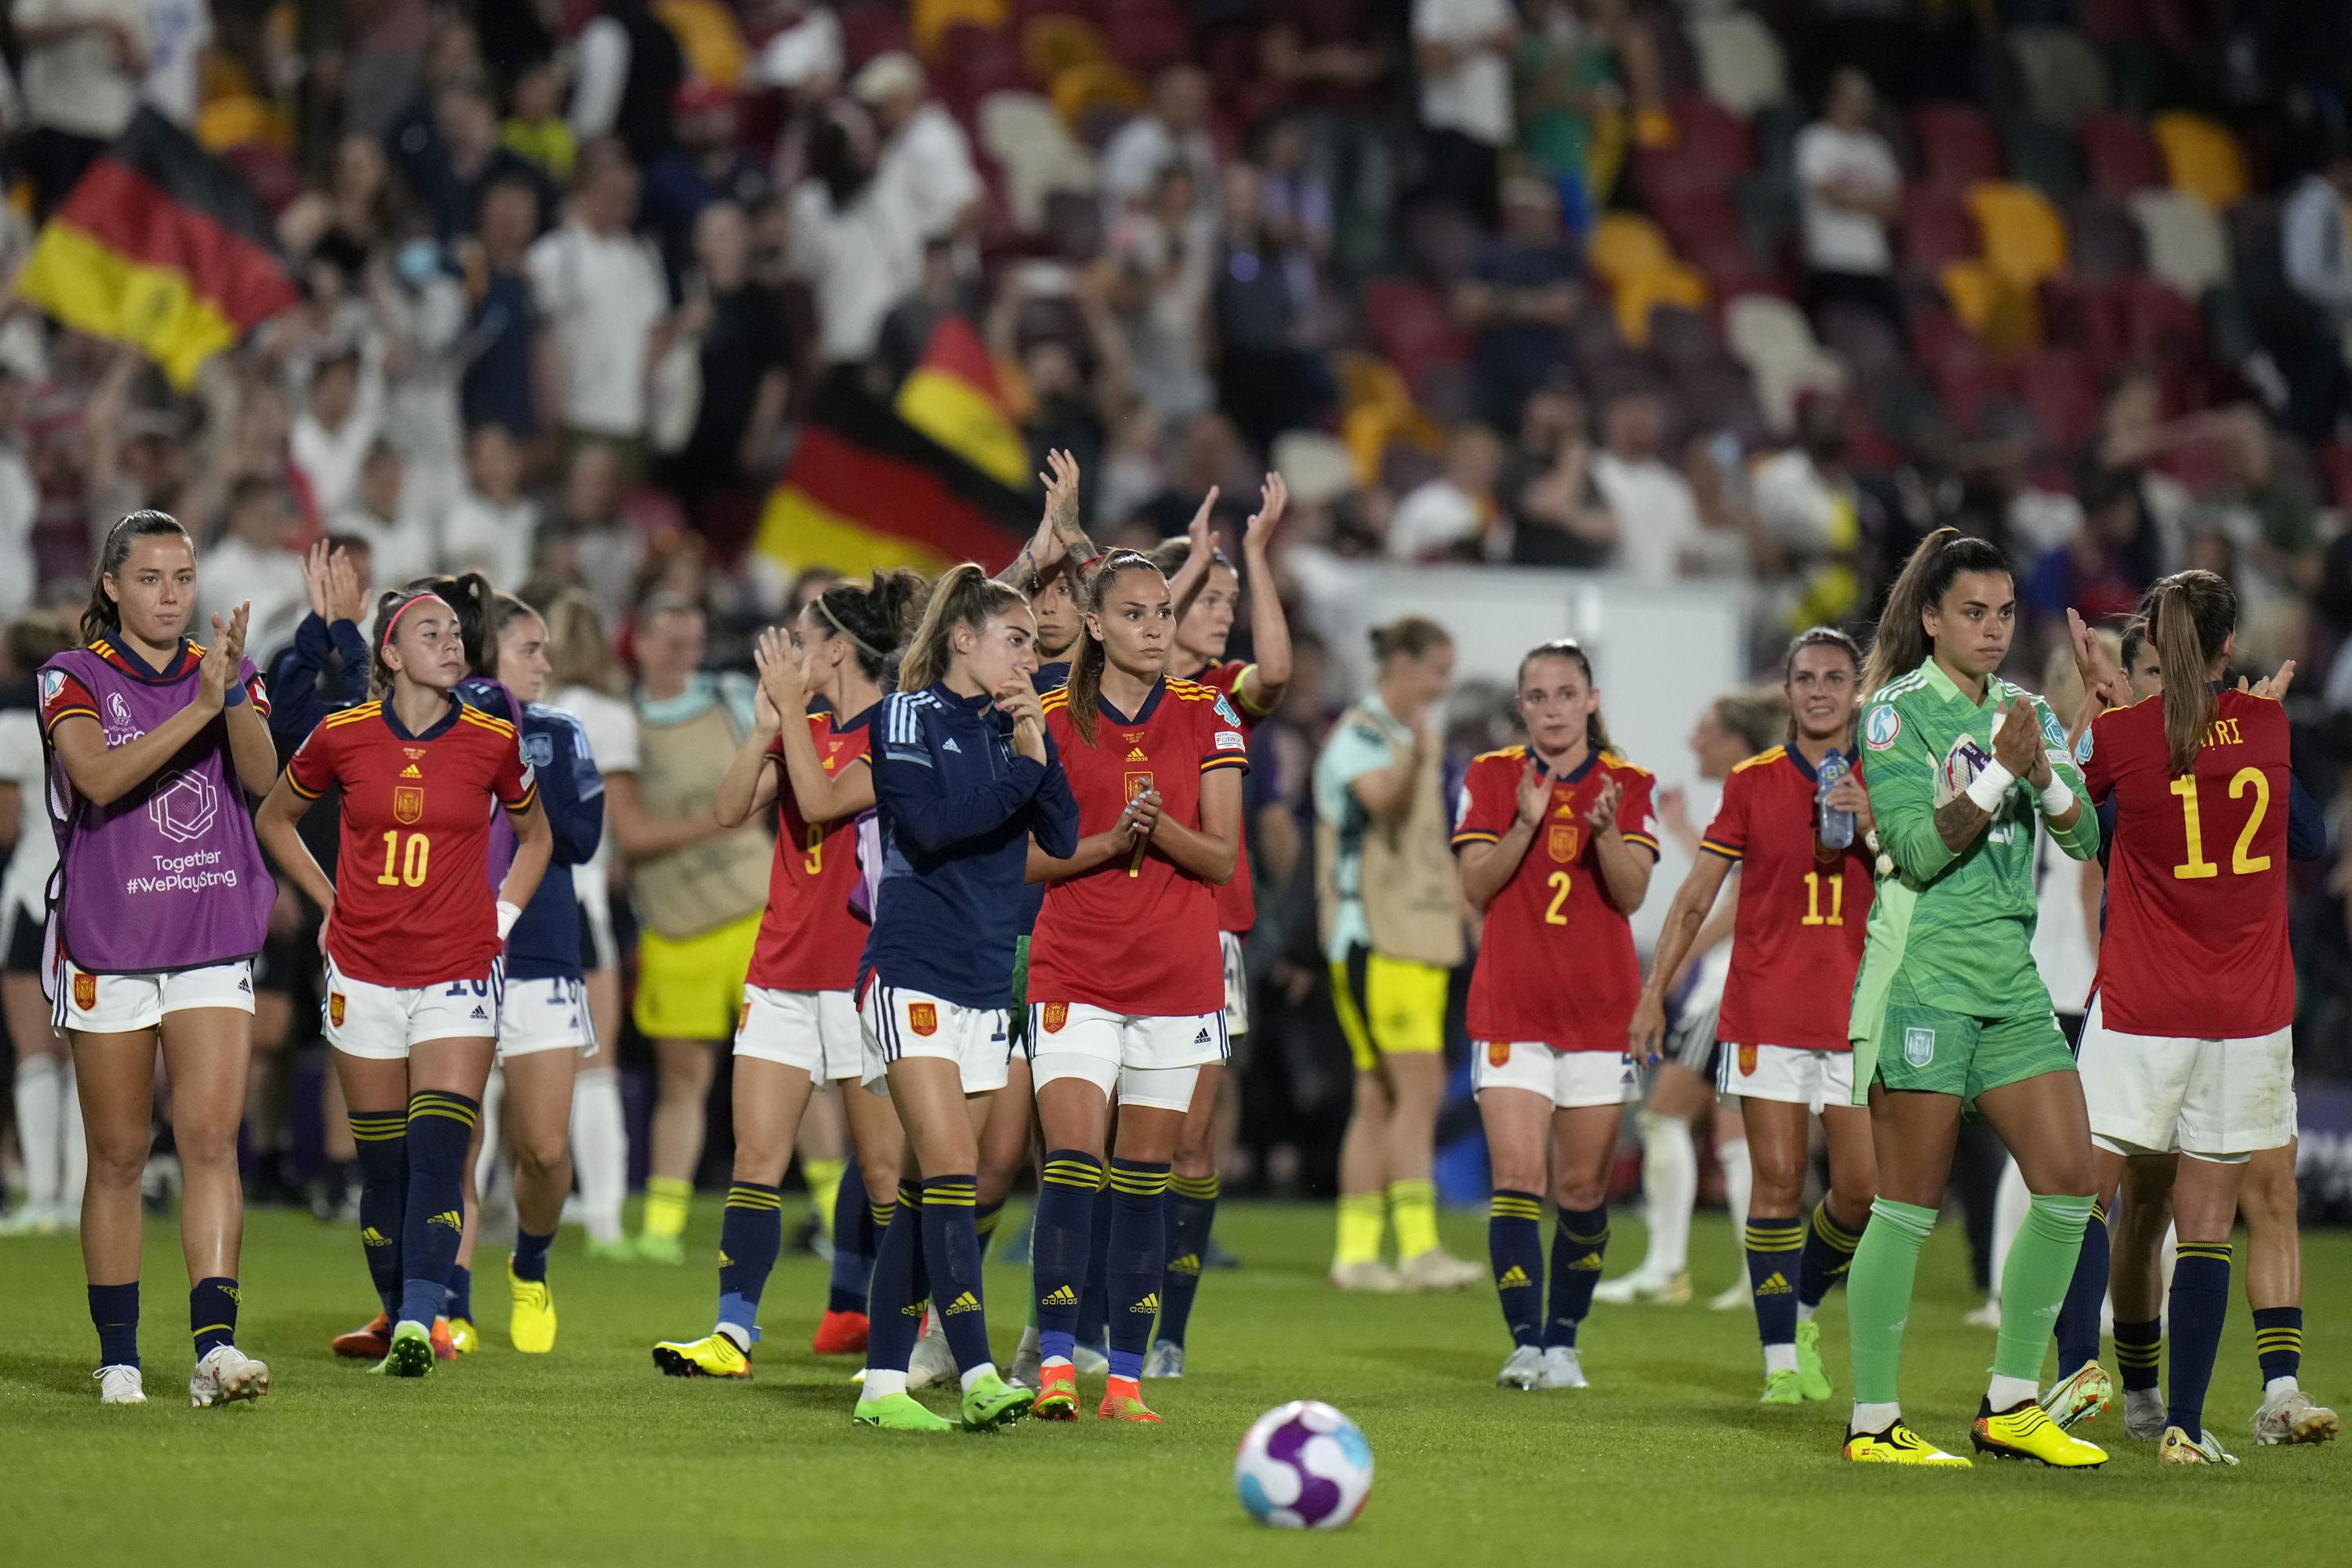 Fútbol femenino español, en crisis por revuelta jugadoras | AP